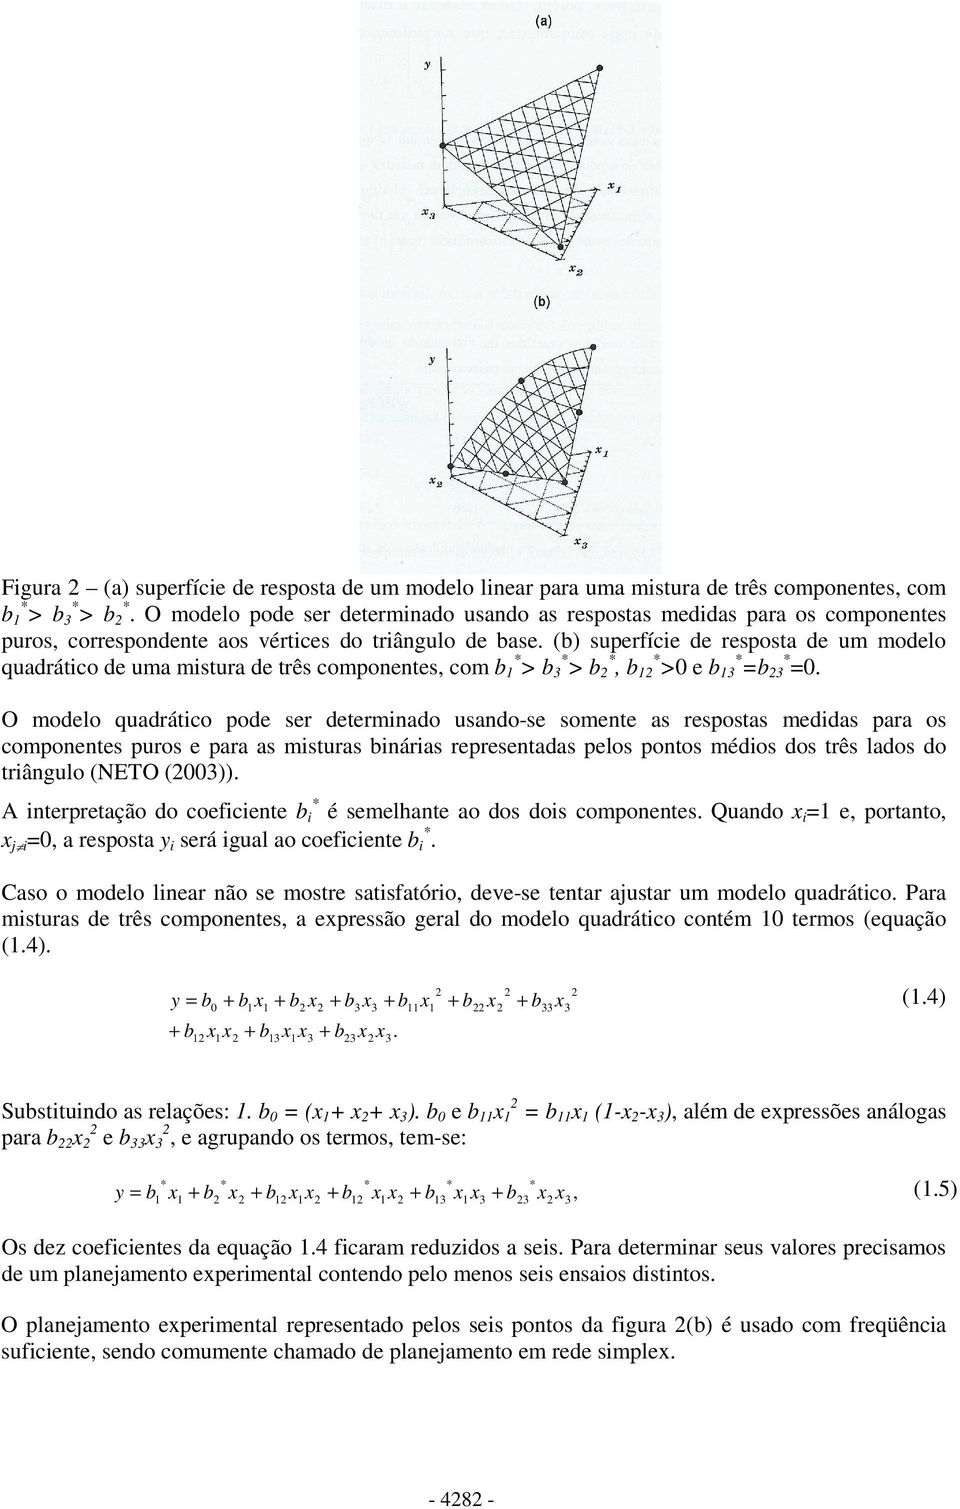 (b) superfíce de resposta de um modelo quadrátco de uma mstura de três componentes, com b * > b 3 * > b *, b * >0 e b 3 * =b 3 * =0.